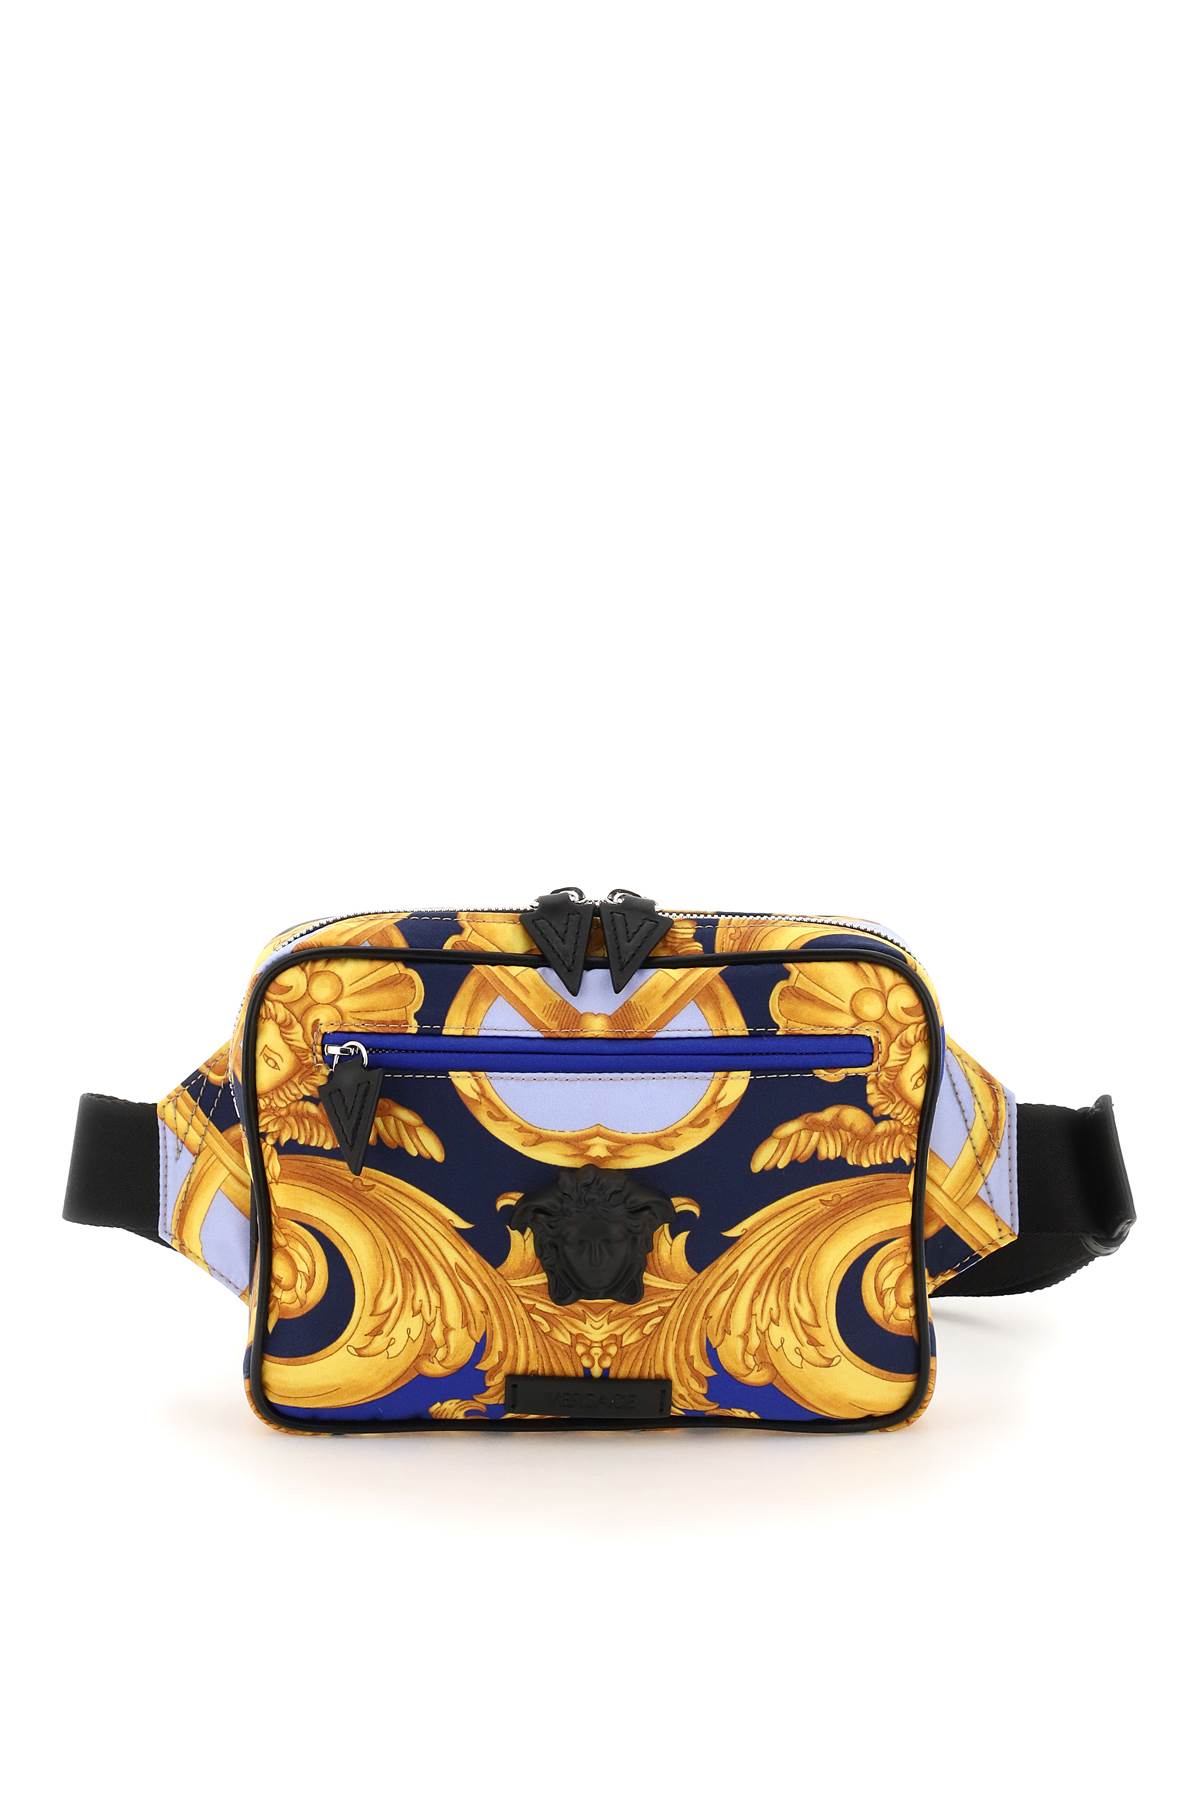 Versace La Medusa Beltpack In Navy Cobalt Gold Black Pa (blue)